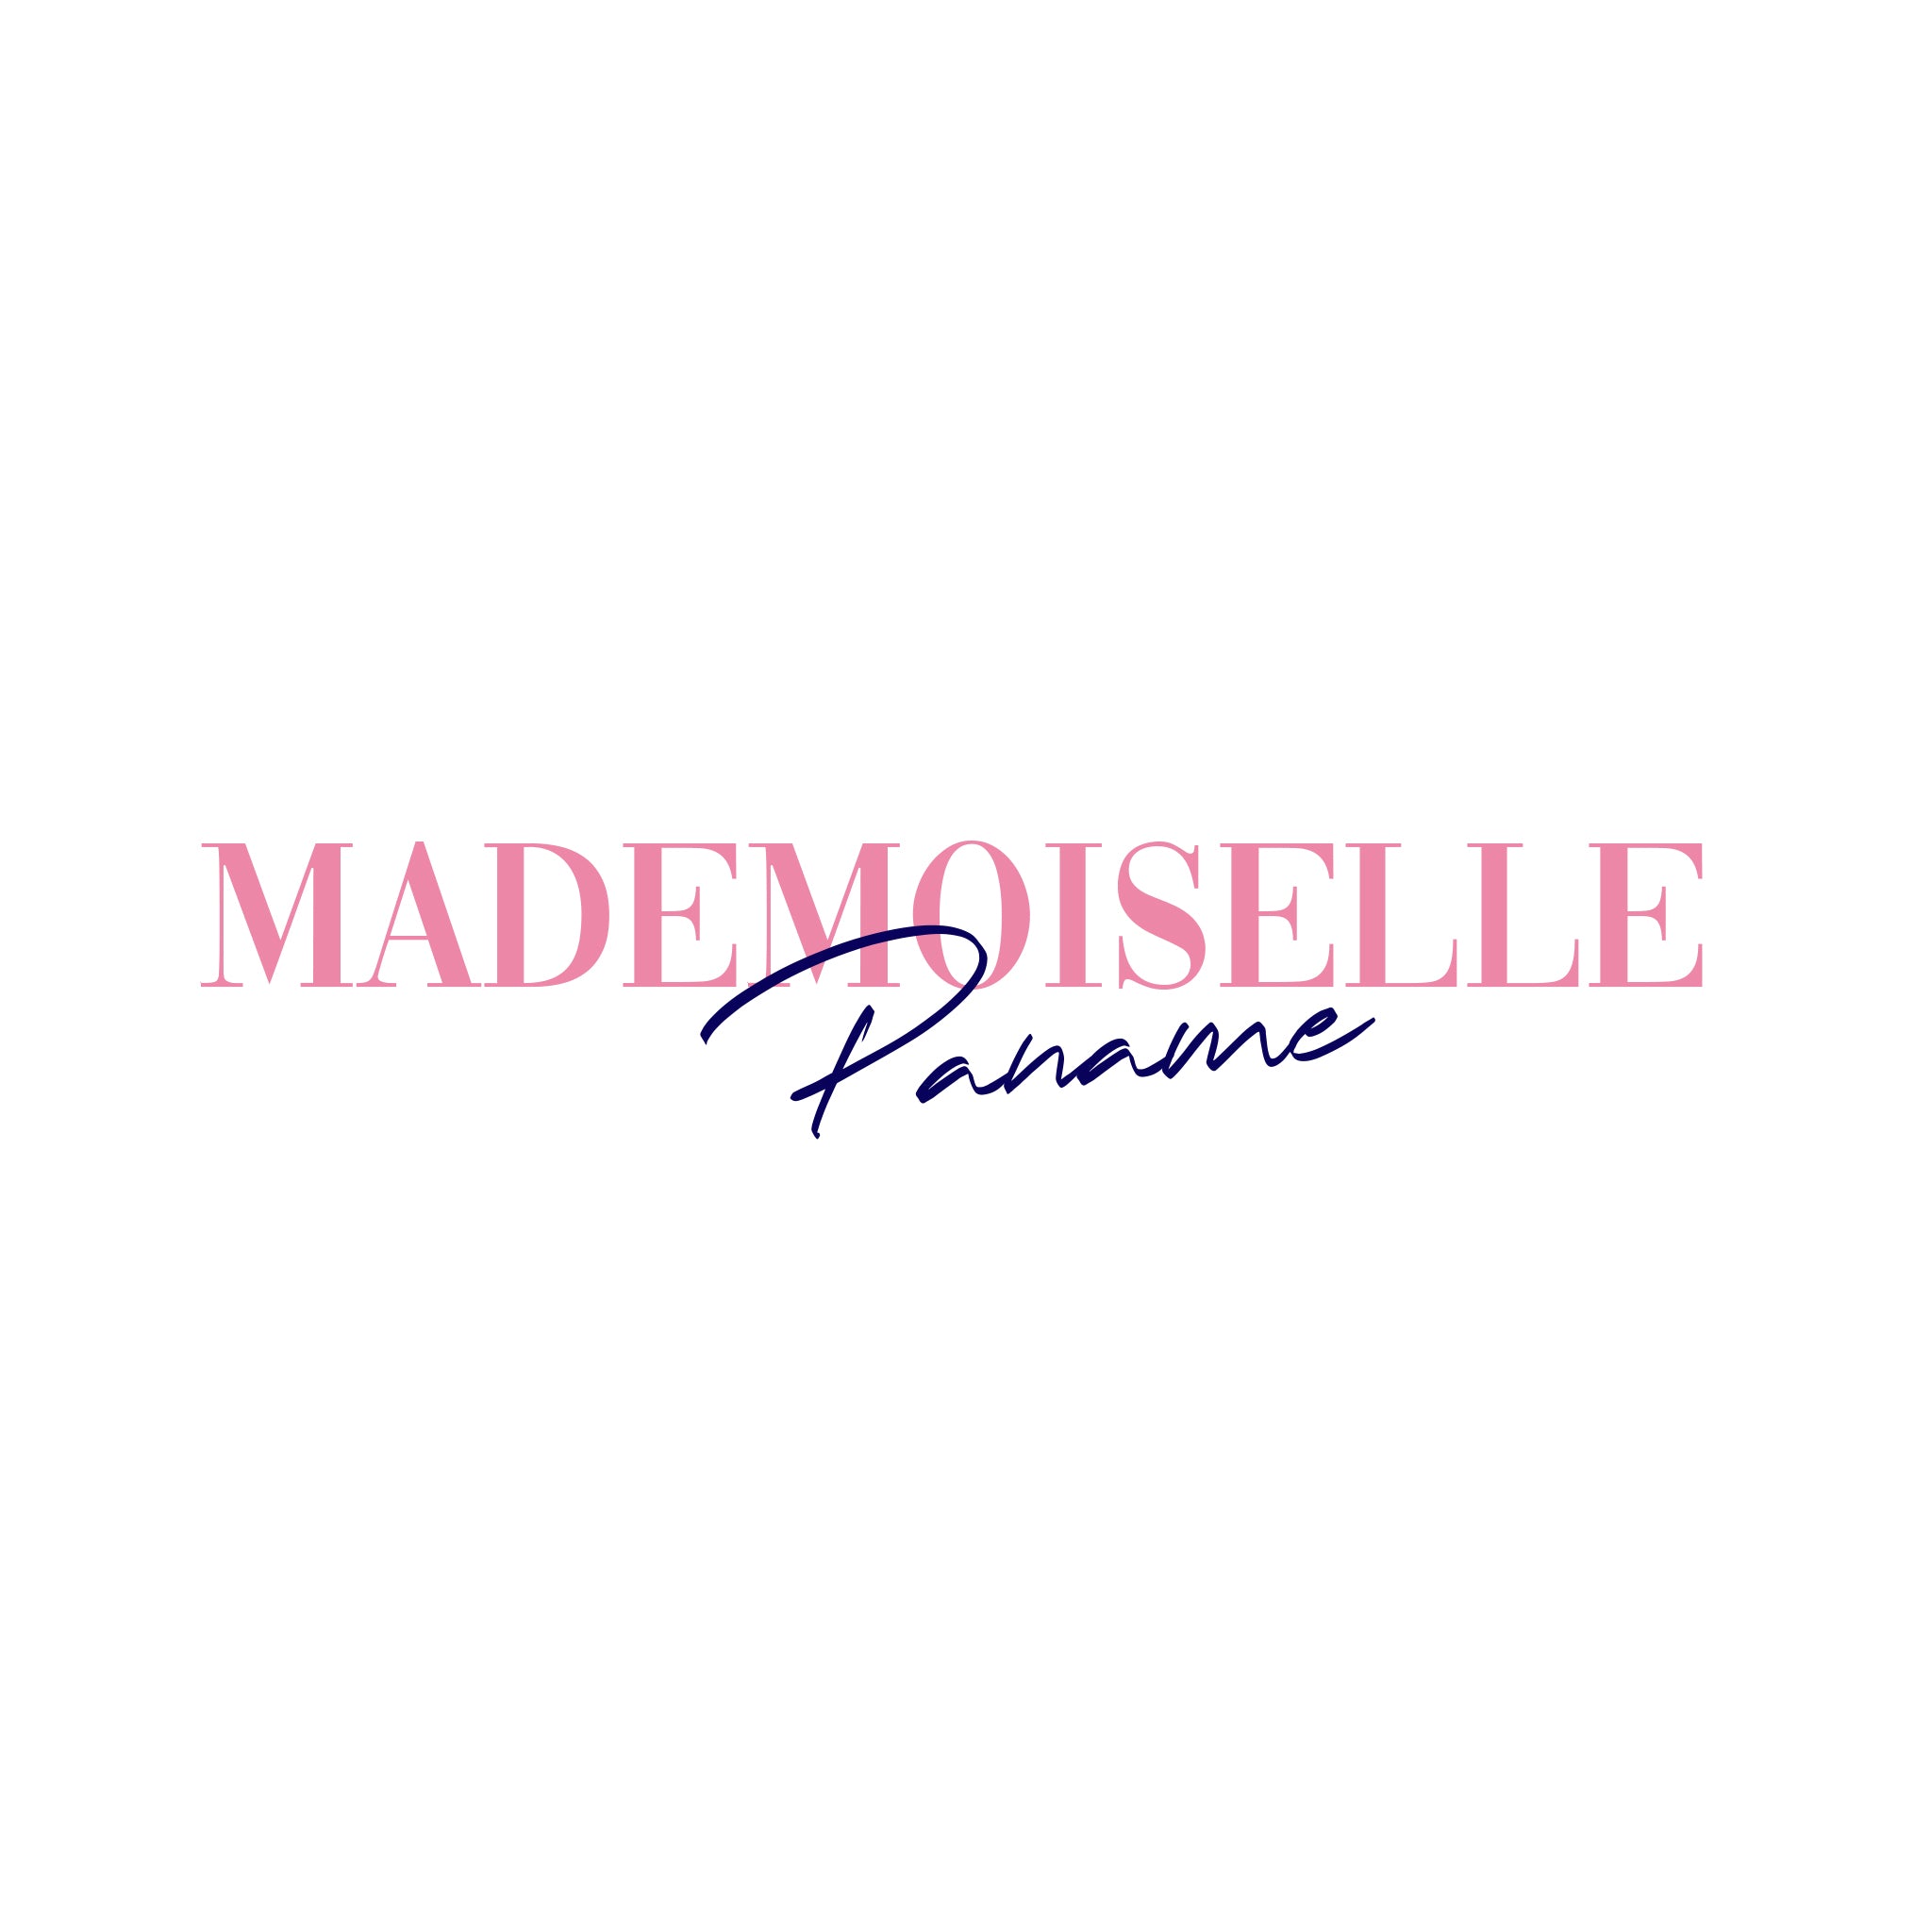 Mademoiselle paname